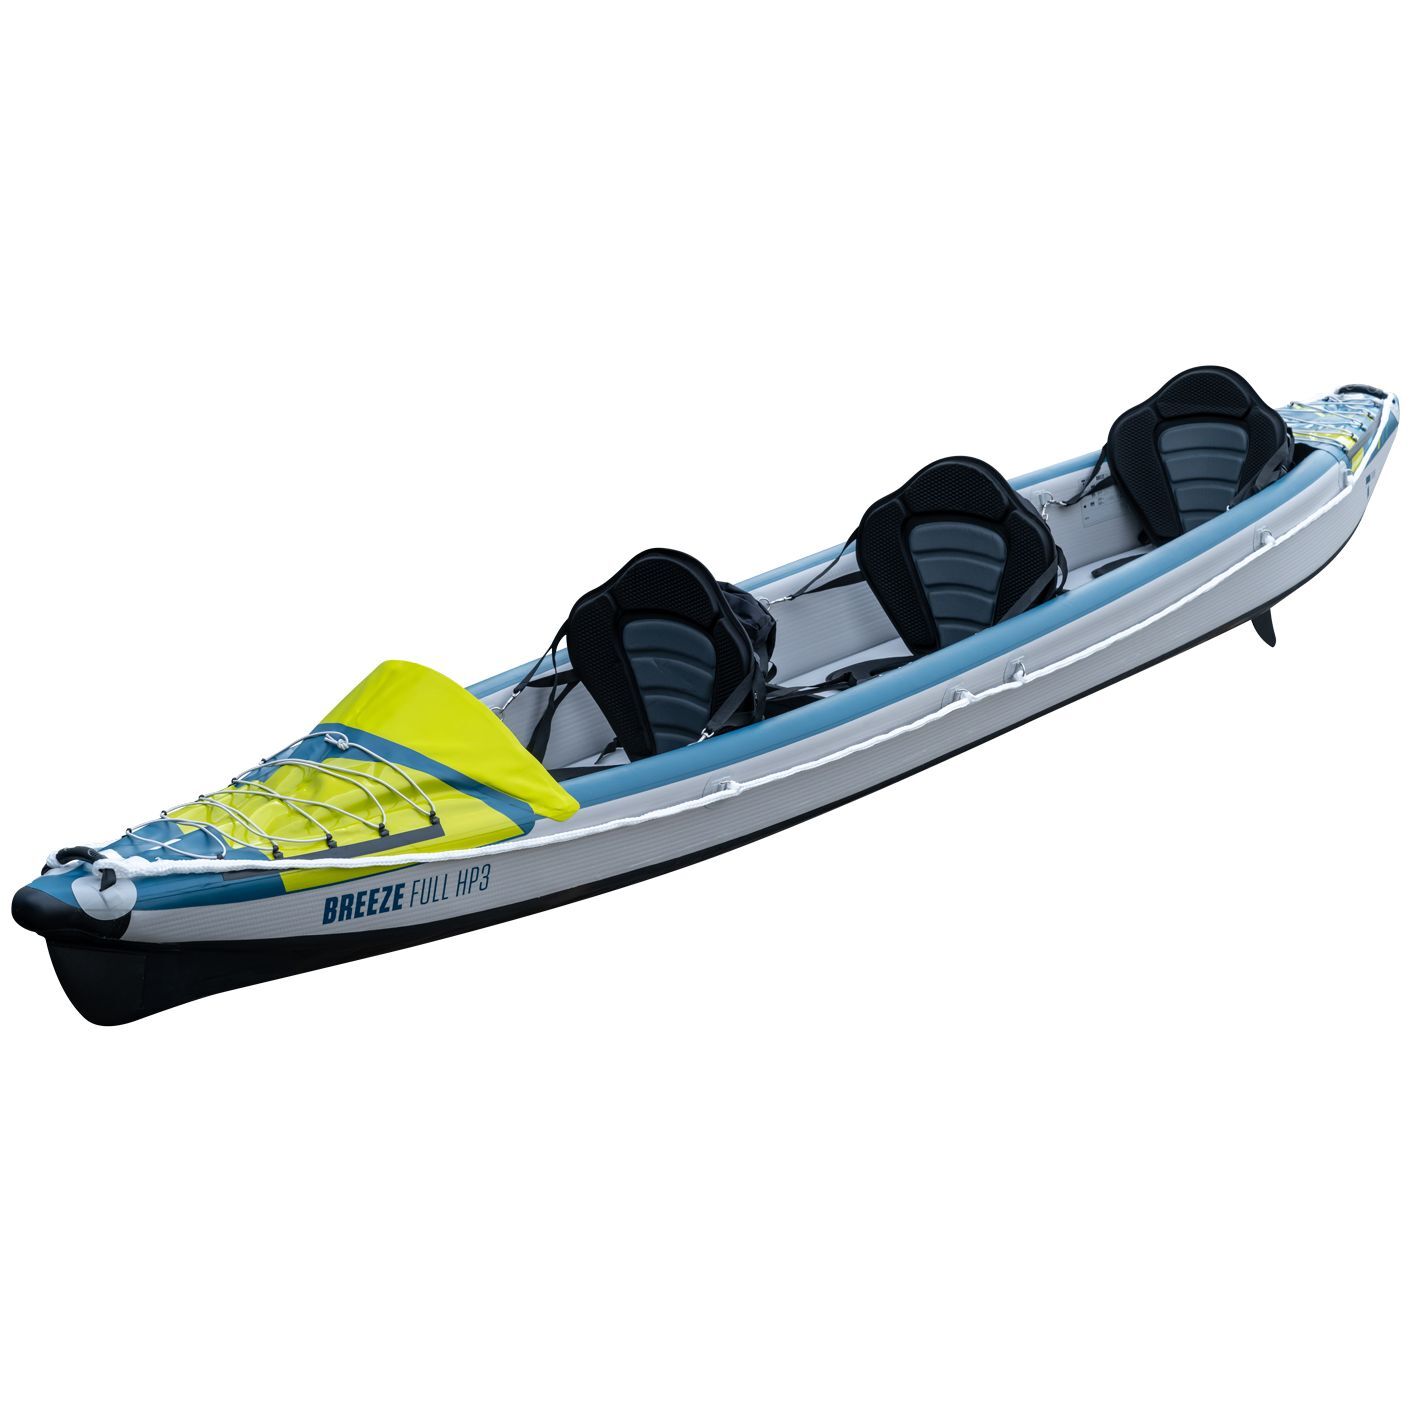 Tahe Outdoor Kayak Air Breeze Full Hp3 - Kayak gonfiabile